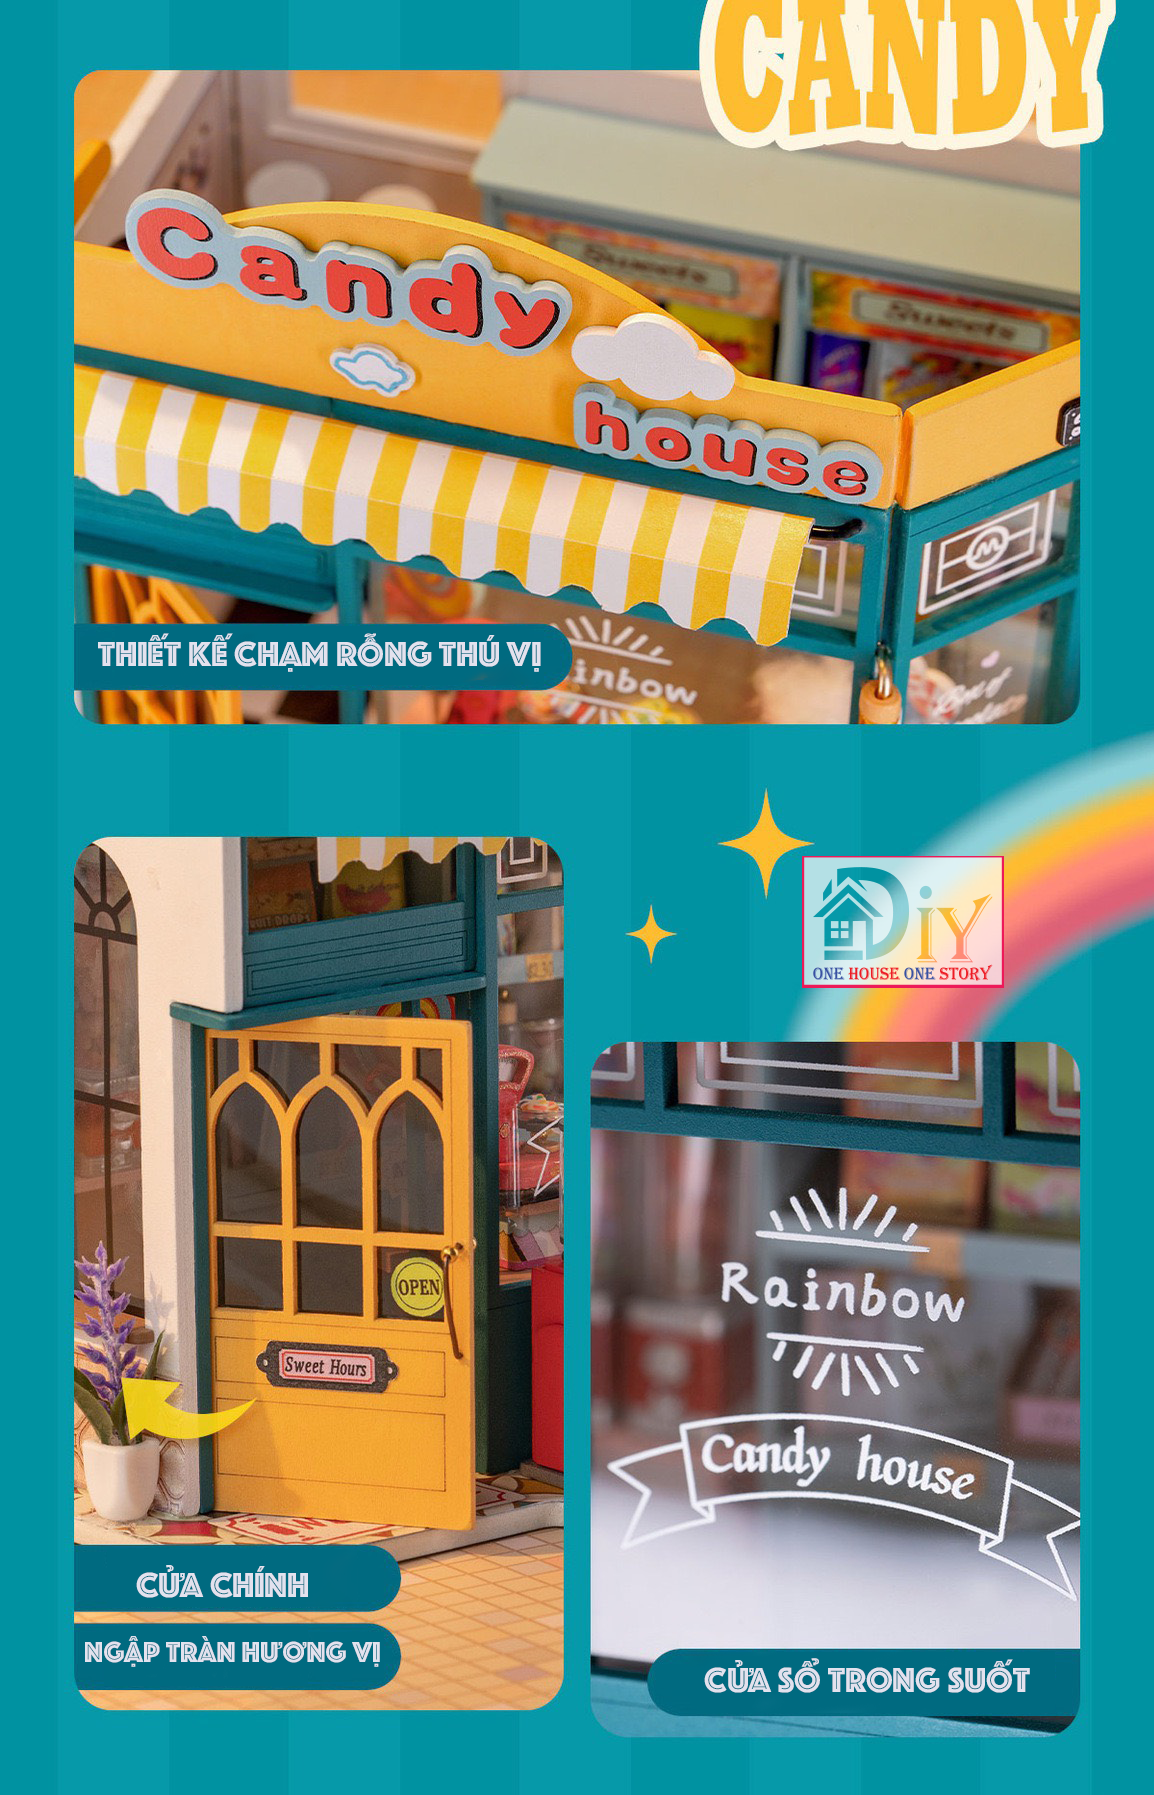 [Bản tiếng Anh]Nhà búp bê Robotime Rolife｜Rainbow Candy House DIY DG158 tự lắp ráp bằng gỗ - Quà tặng giáng sinh